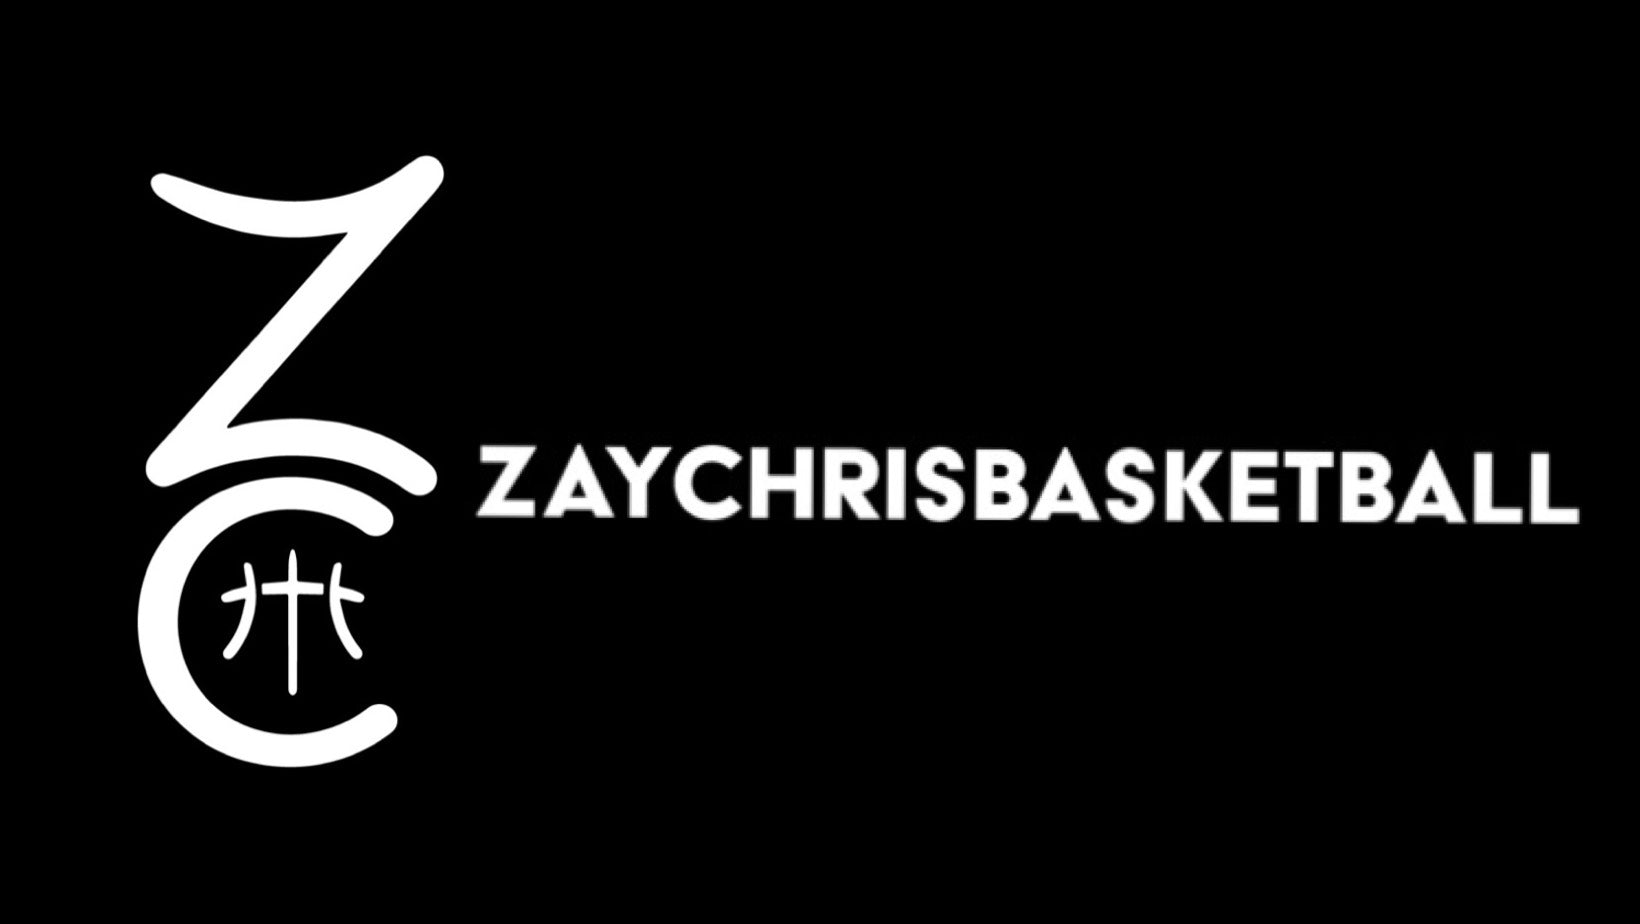 www.zaychrisbasketball.com